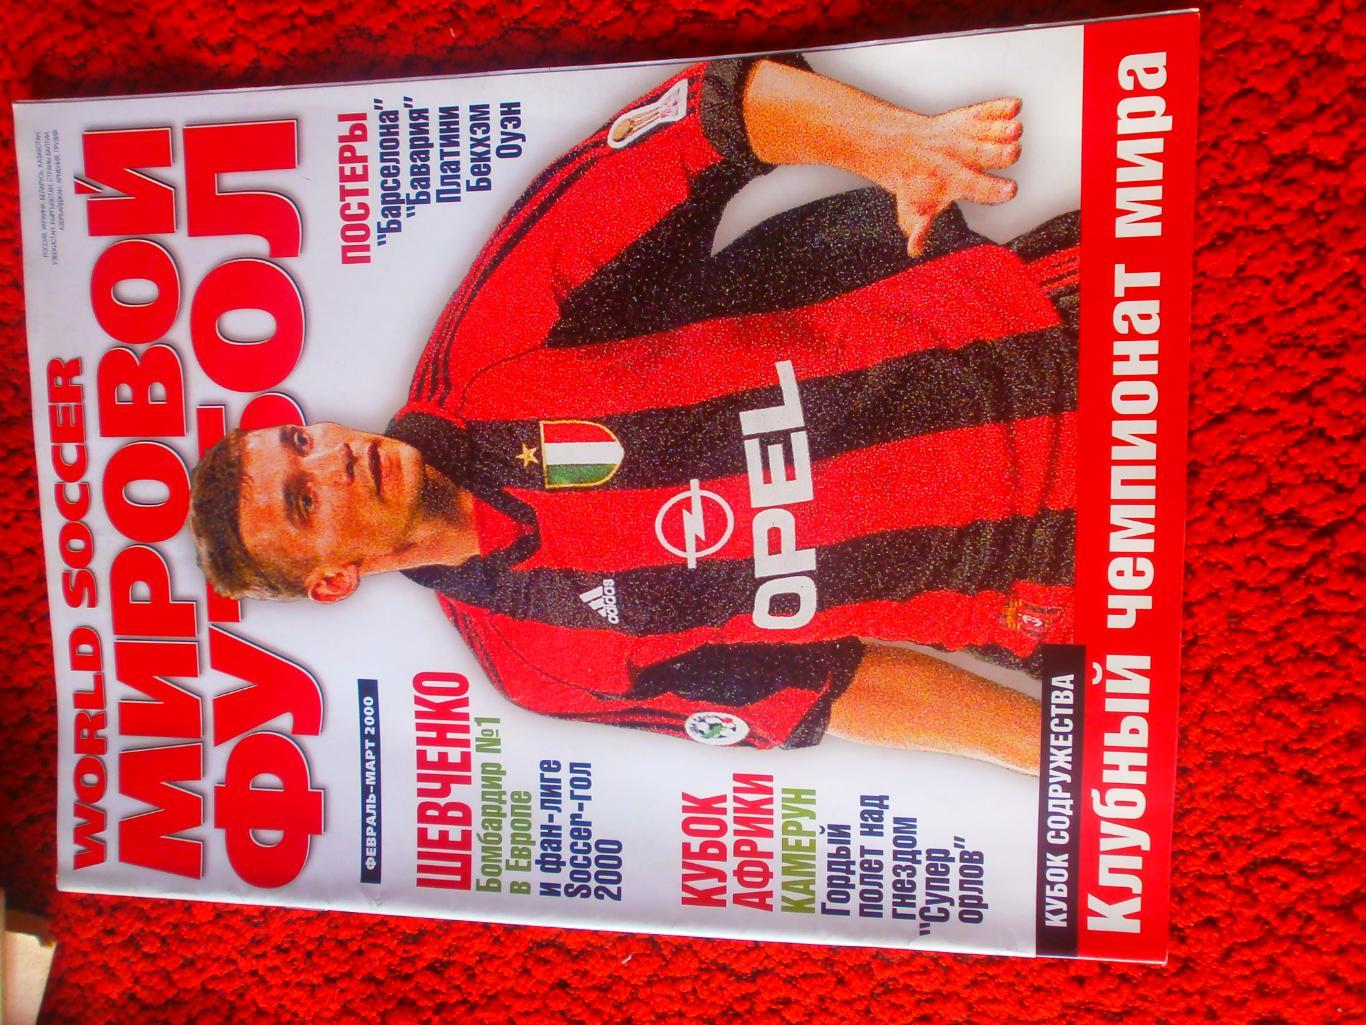 Журнал Мировой футбол февраль-март 2000г. Есть постеры